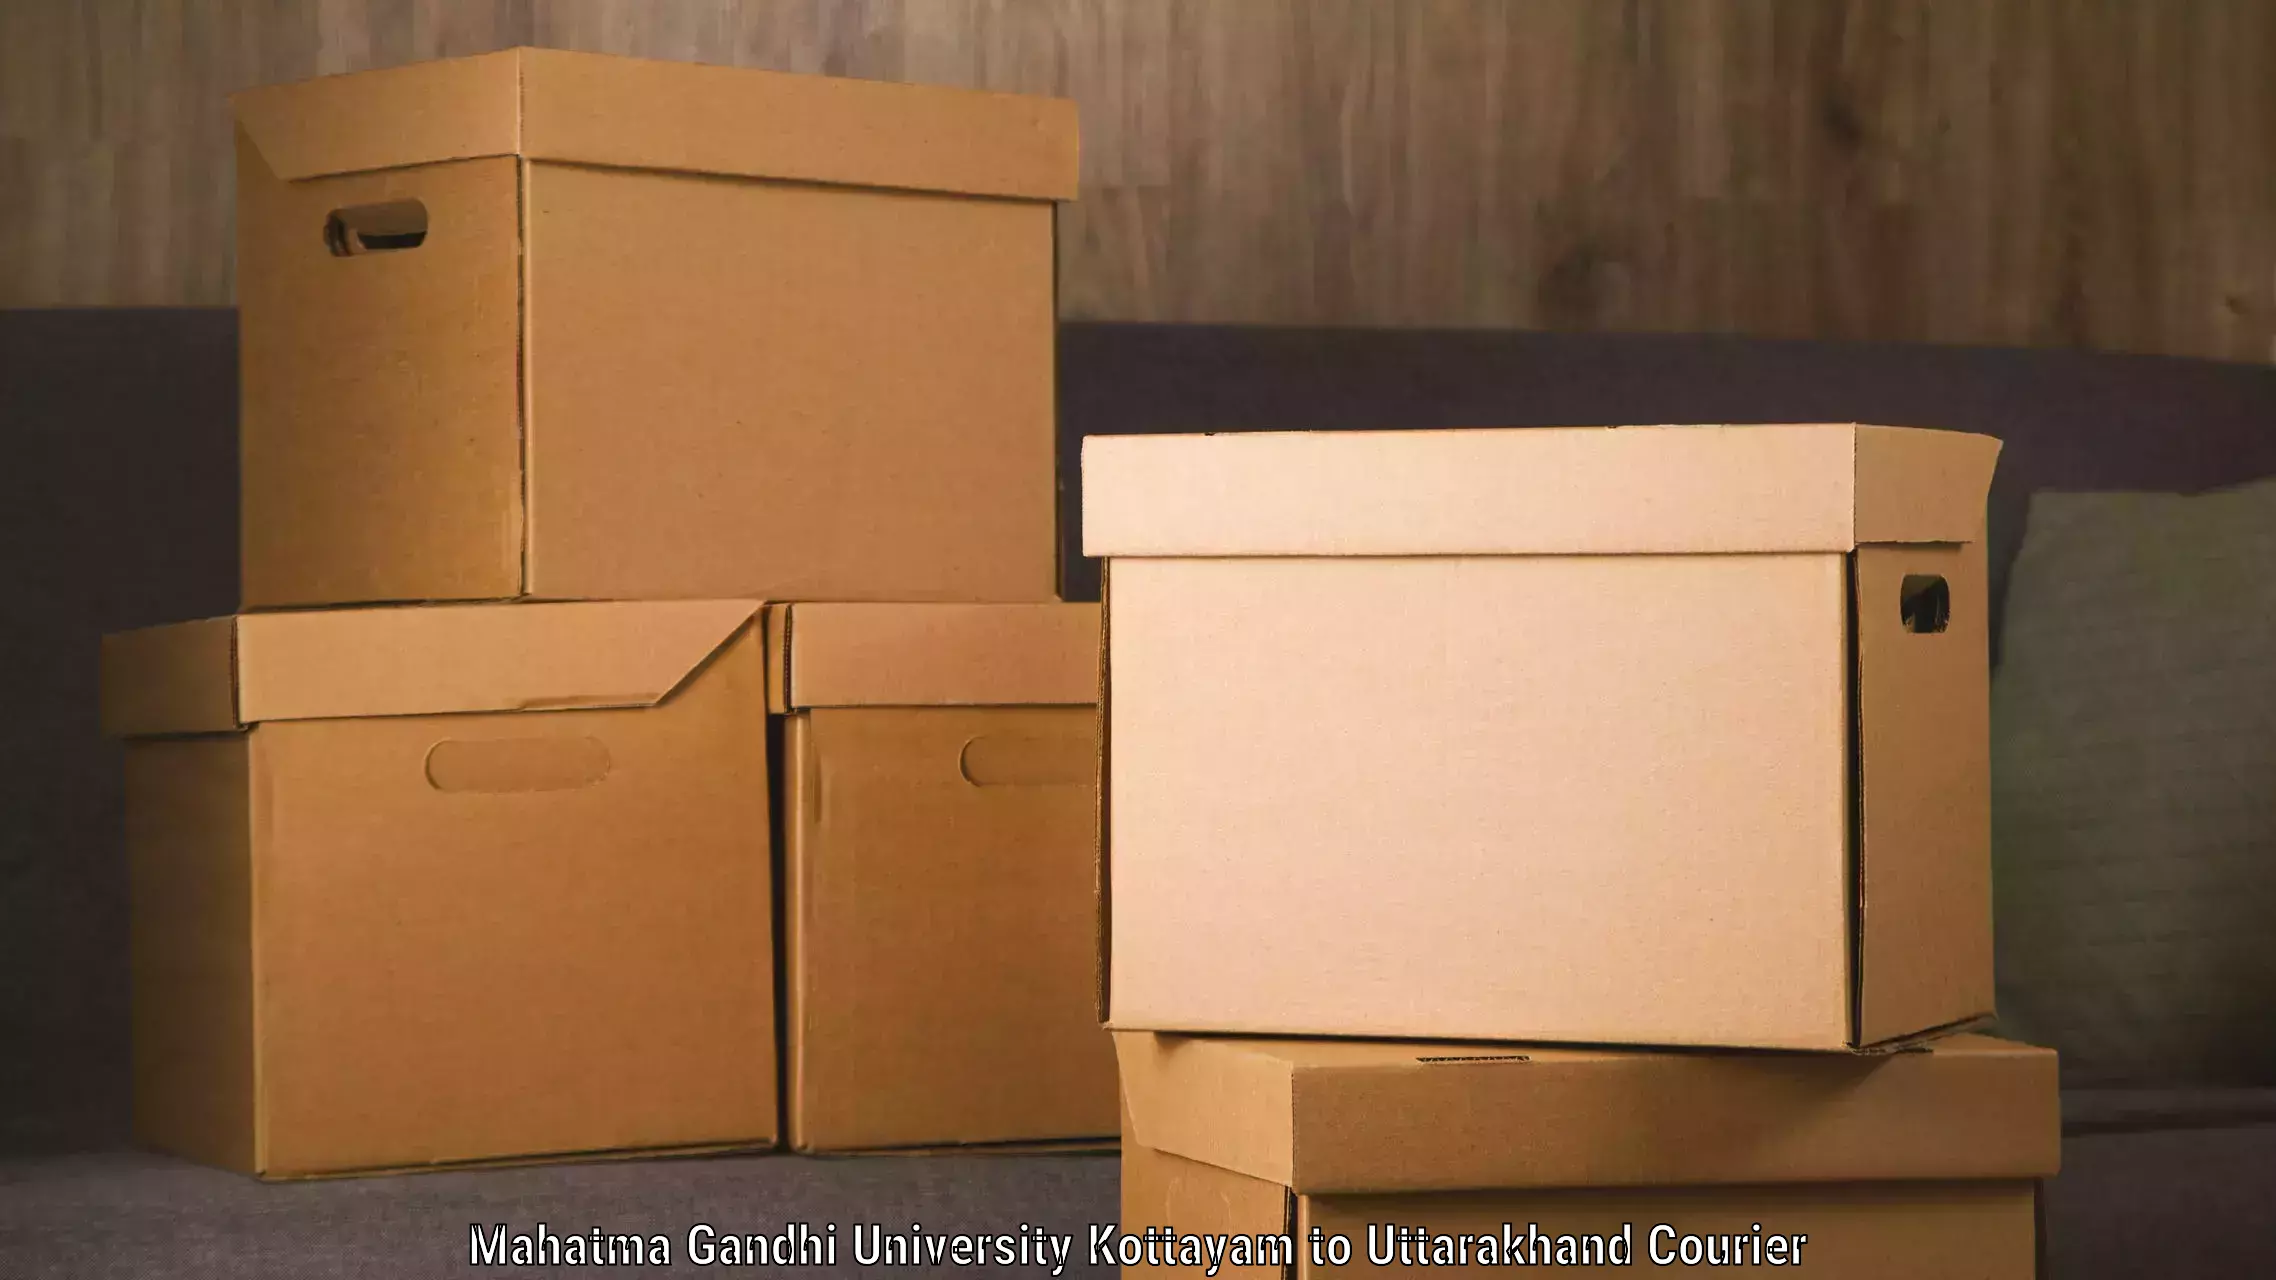 Fast shipping solutions in Mahatma Gandhi University Kottayam to Karnaprayag